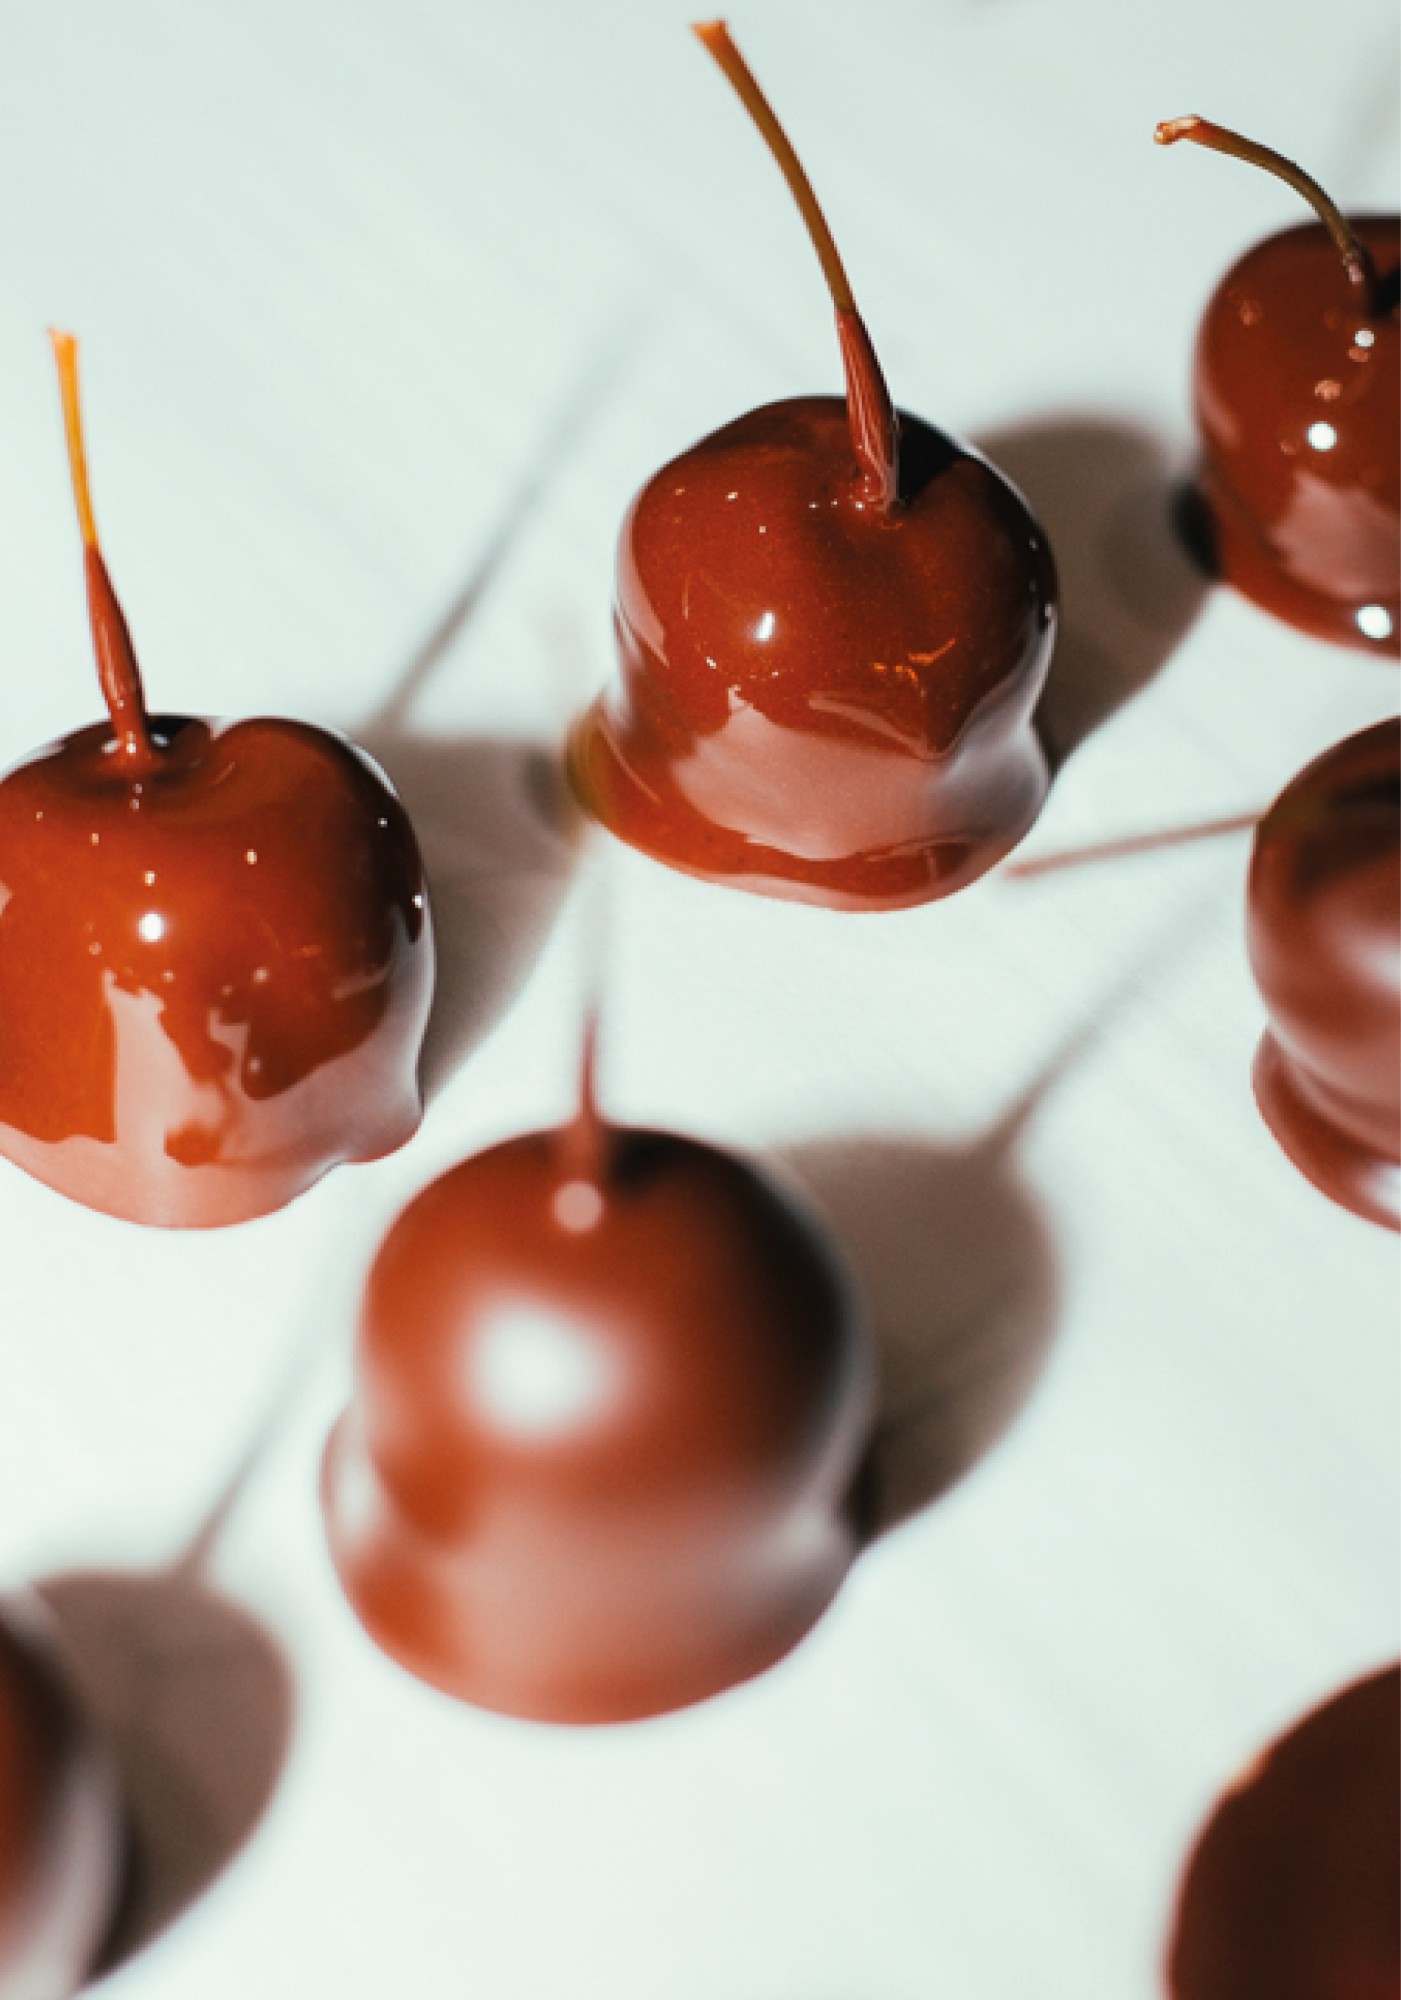 Image : Chocolate Cherries